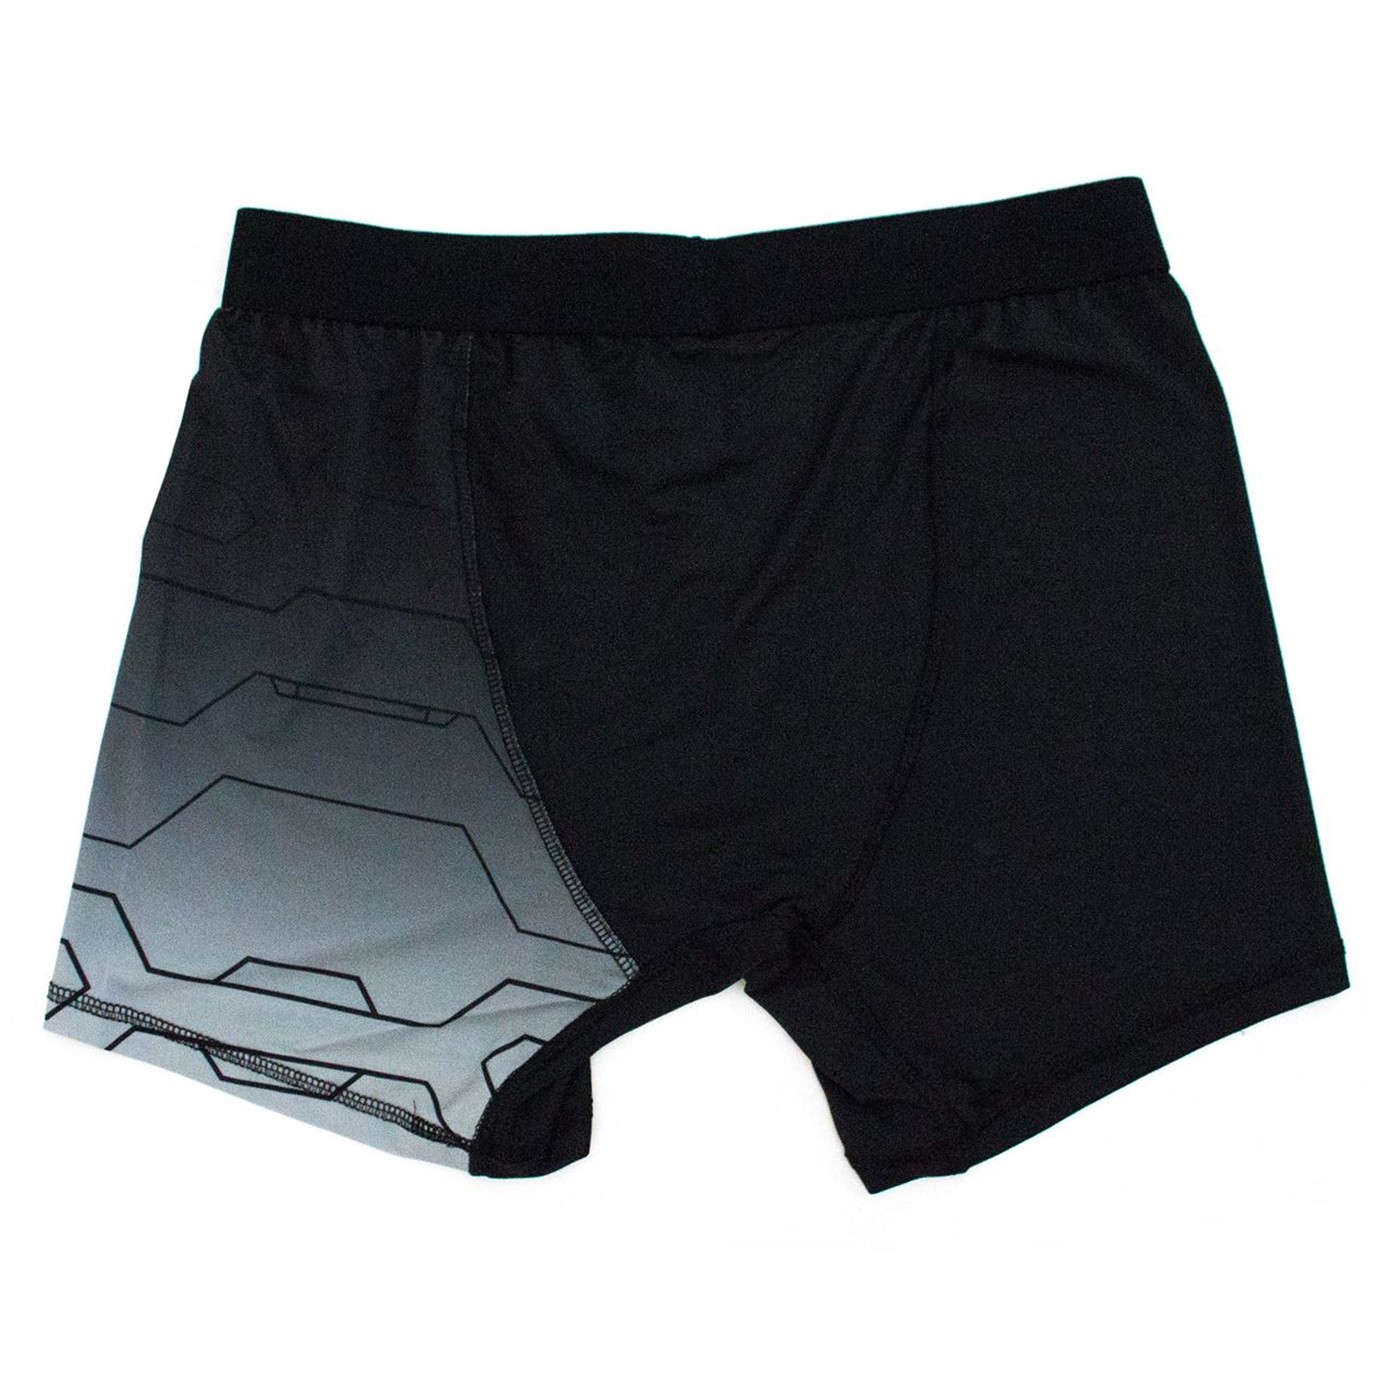 Winter Soldier Armor Men's Underwear Boxer Briefs